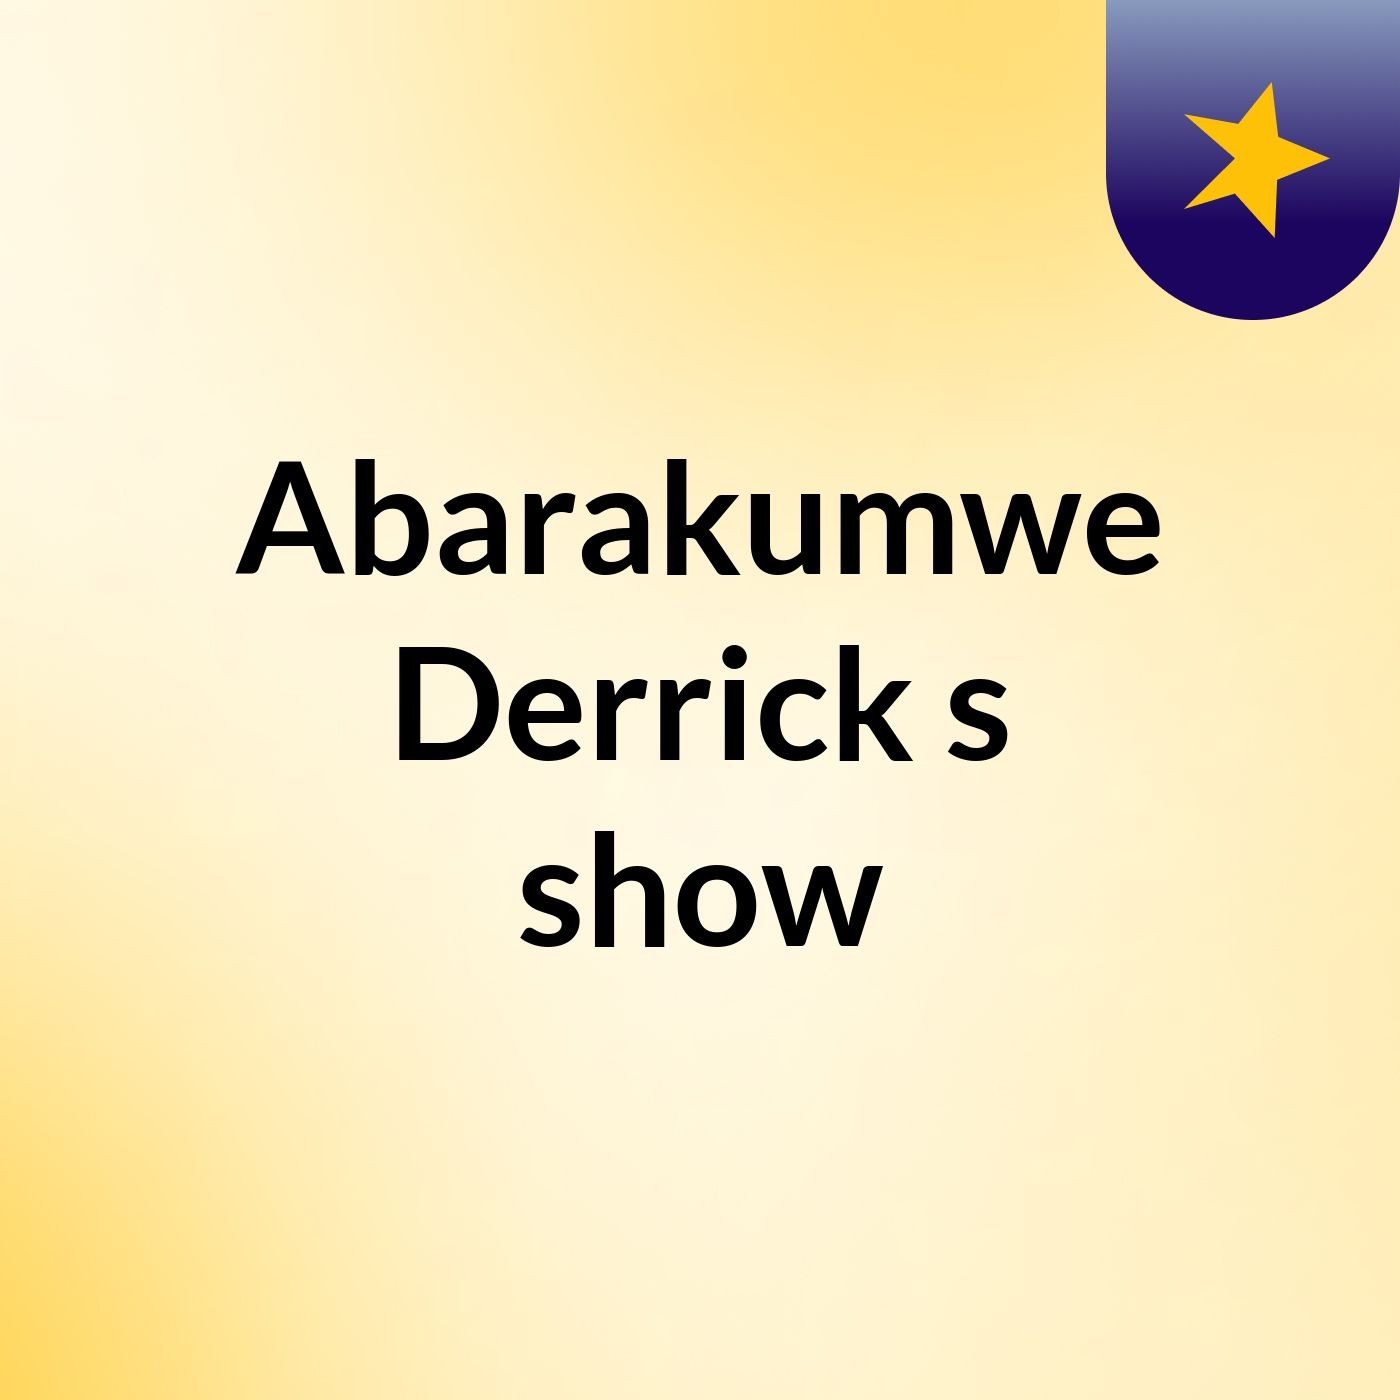 Abarakumwe Derrick's show